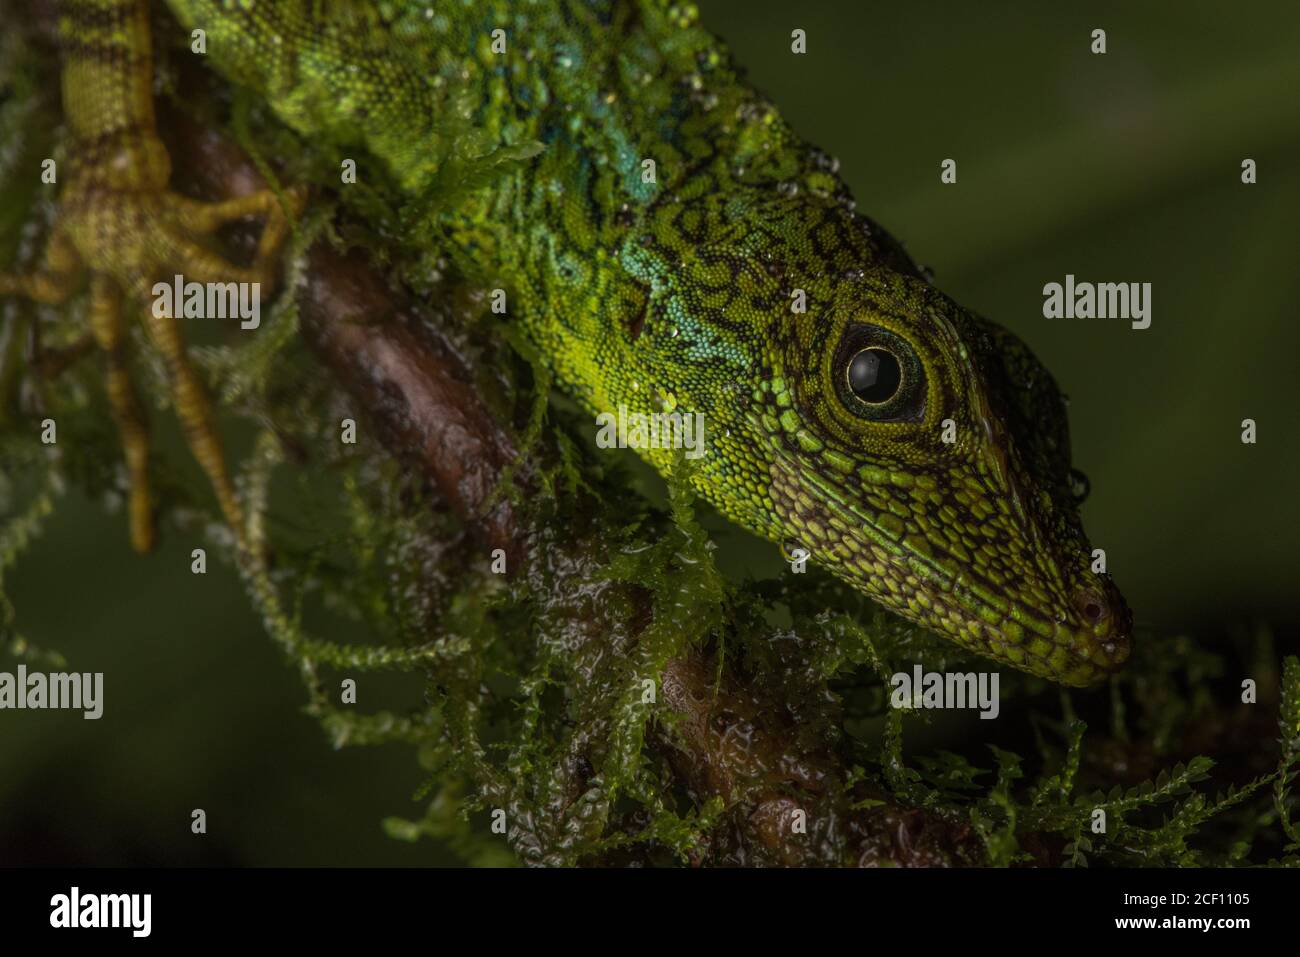 La face d'un anole équatorial (Anolis aequatorialis) une espèce de lézard trouvée dans la forêt équatoriale équatorienne. Banque D'Images